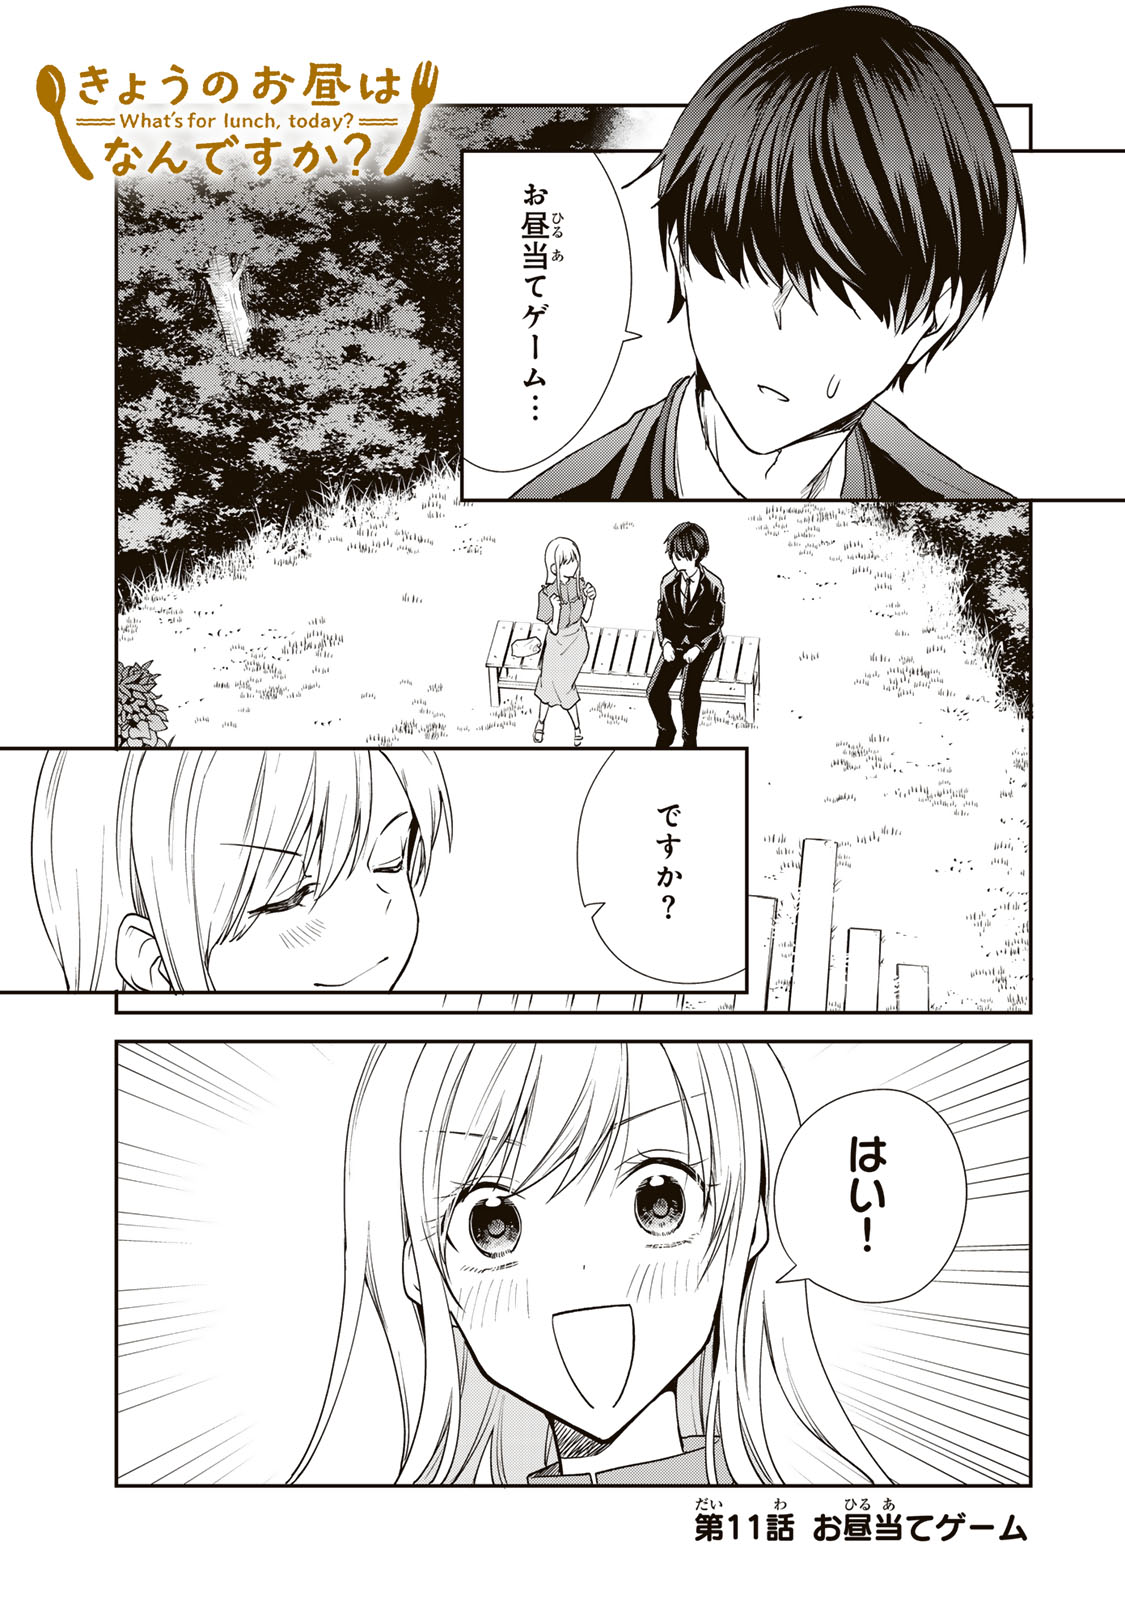 Kyou no Ohiru wa Nan desu ka? - Chapter 11 - Page 1